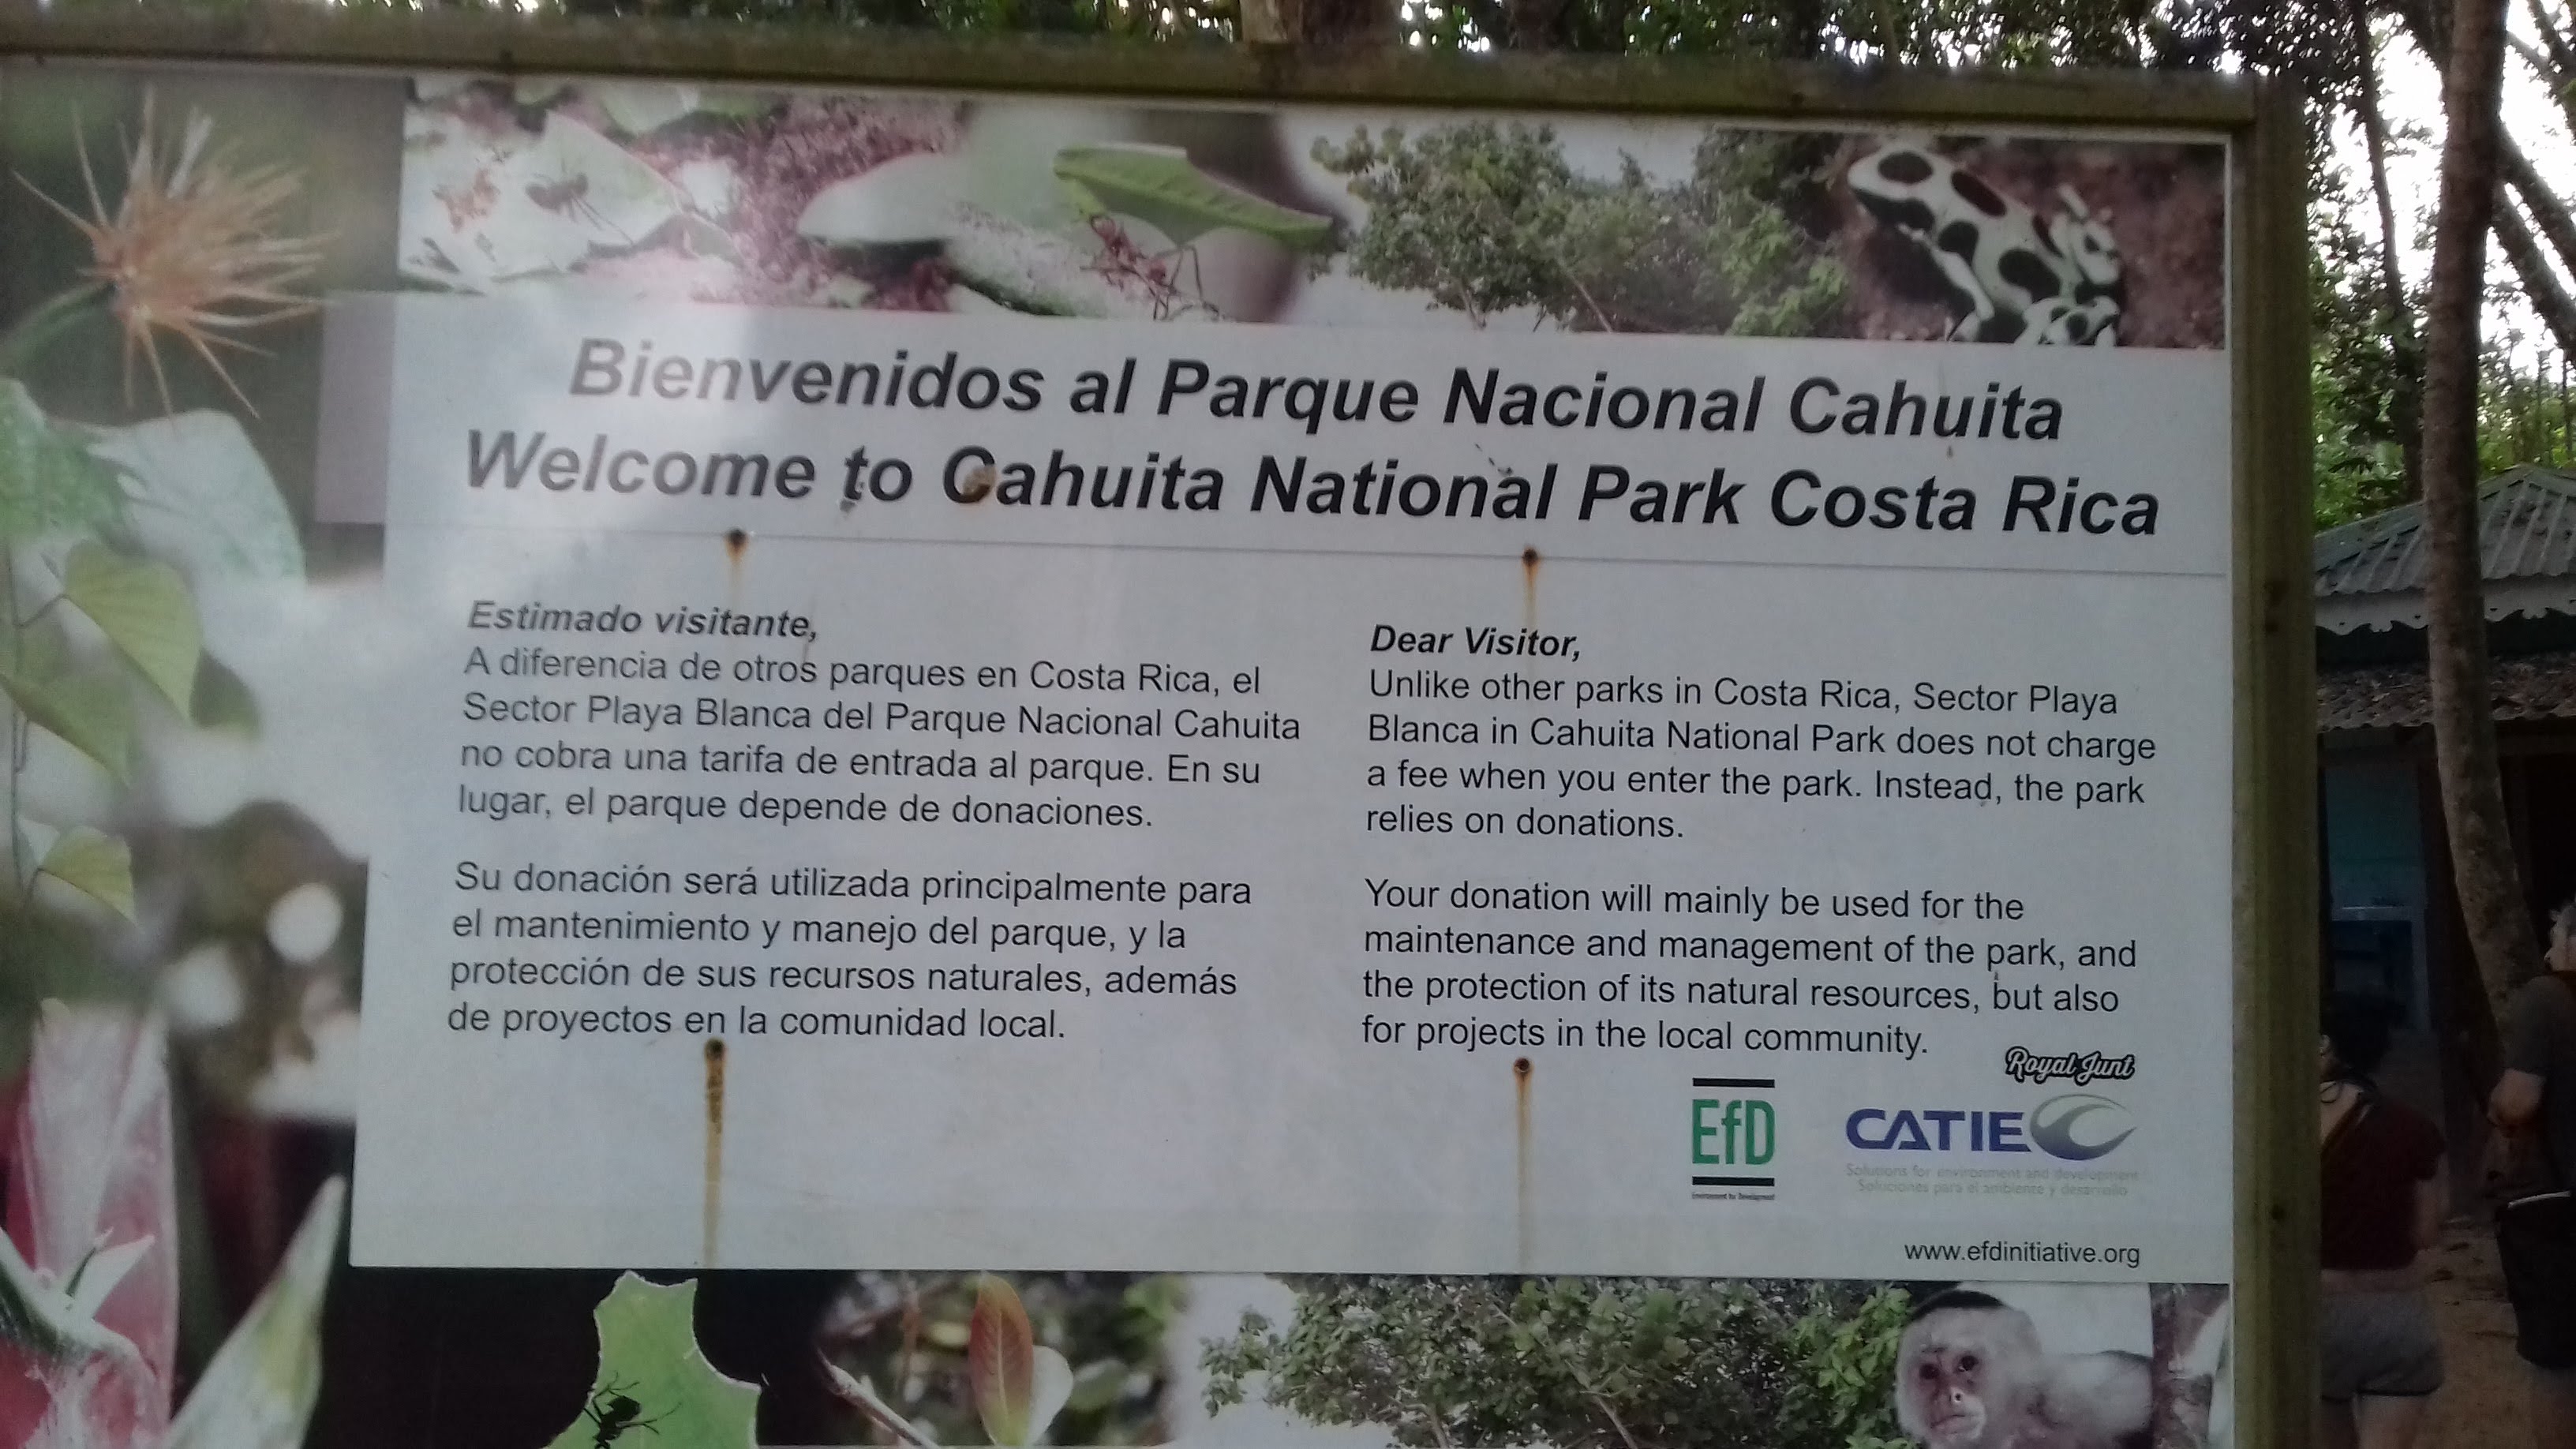 Parc Nacional Cahuita